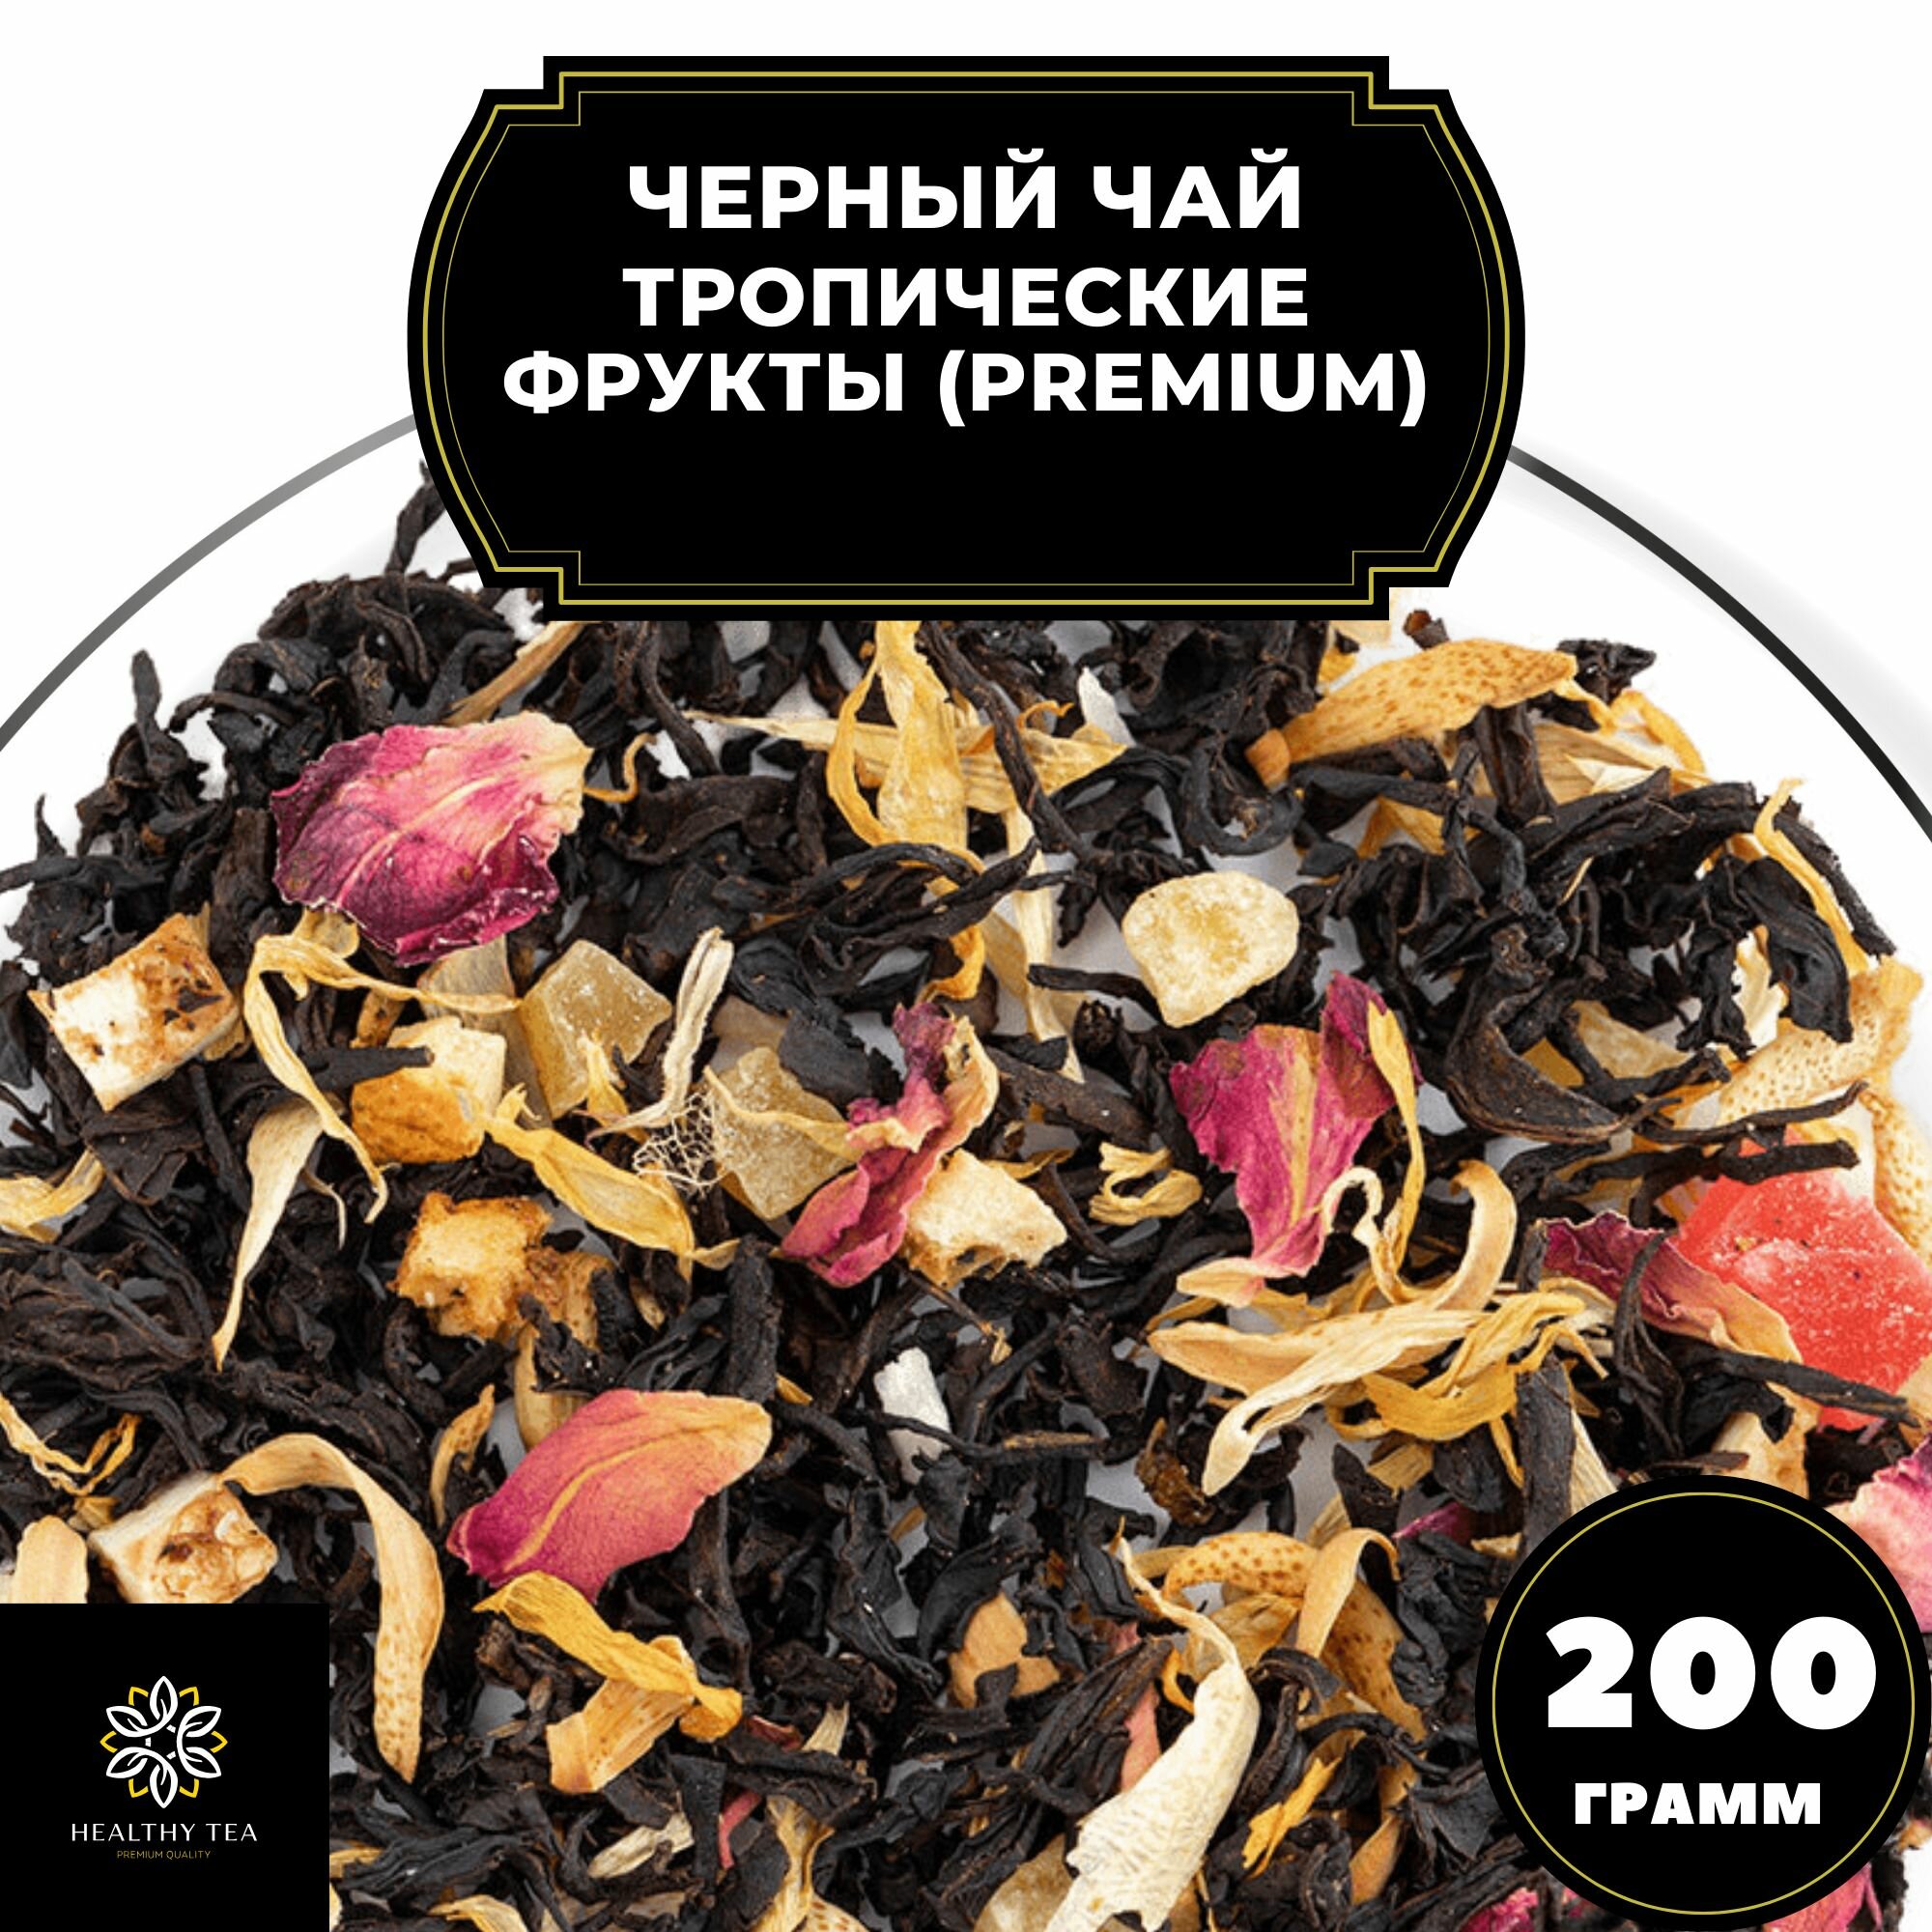 Цейлонский Черный чай с ананасом, апельсином и лимоном "Тропические фрукты" (Premium) Полезный чай / HEALTHY TEA, 200 гр